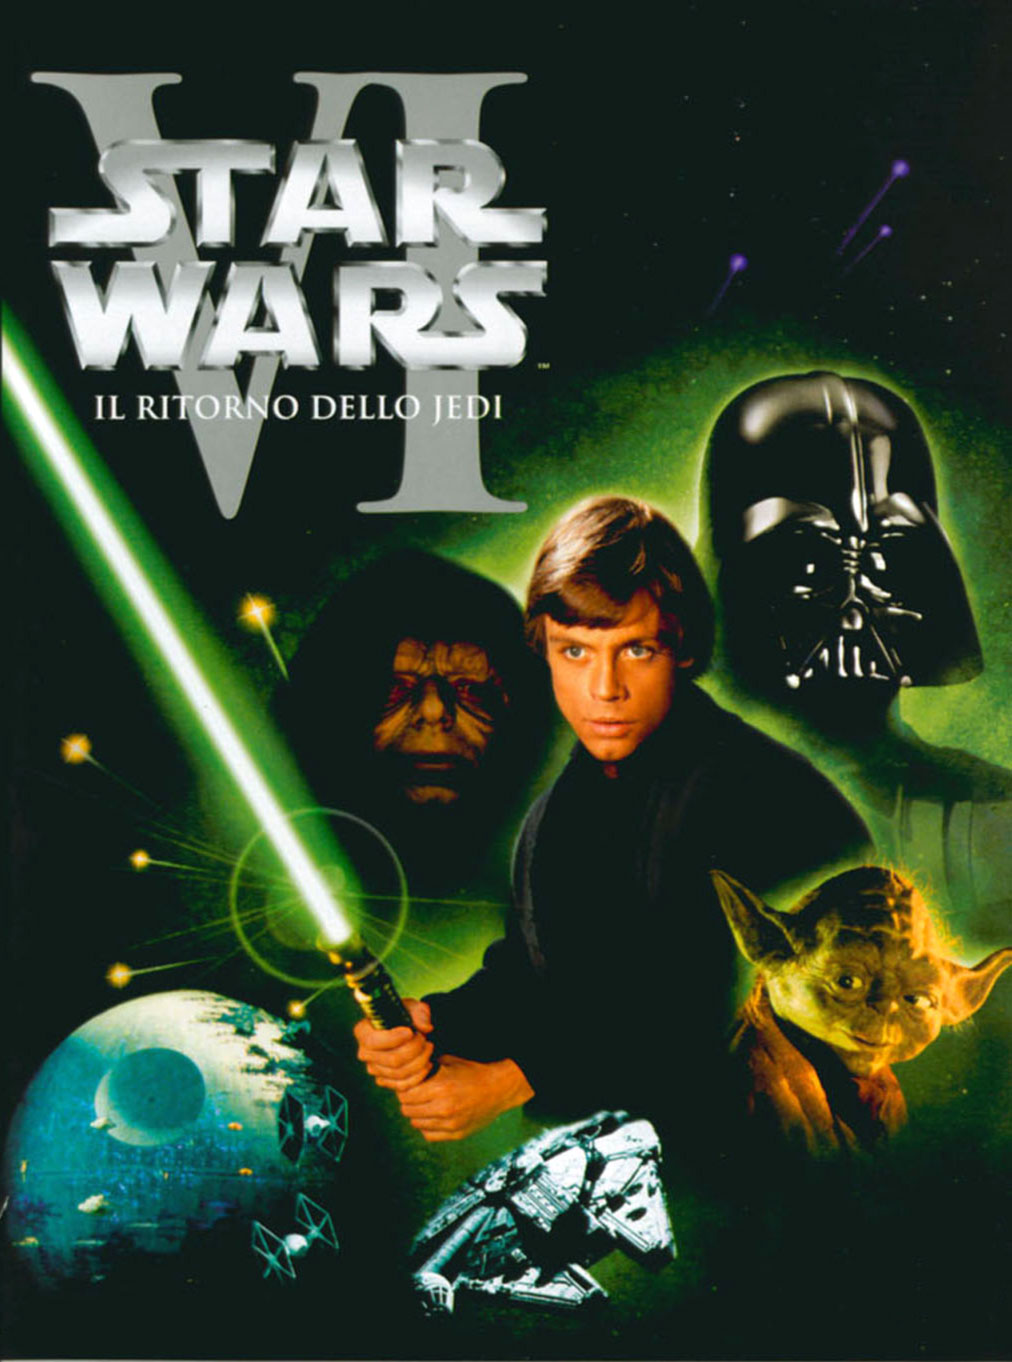 Star Wars, Episodio VI: IL RITORNO DELLO JEDI